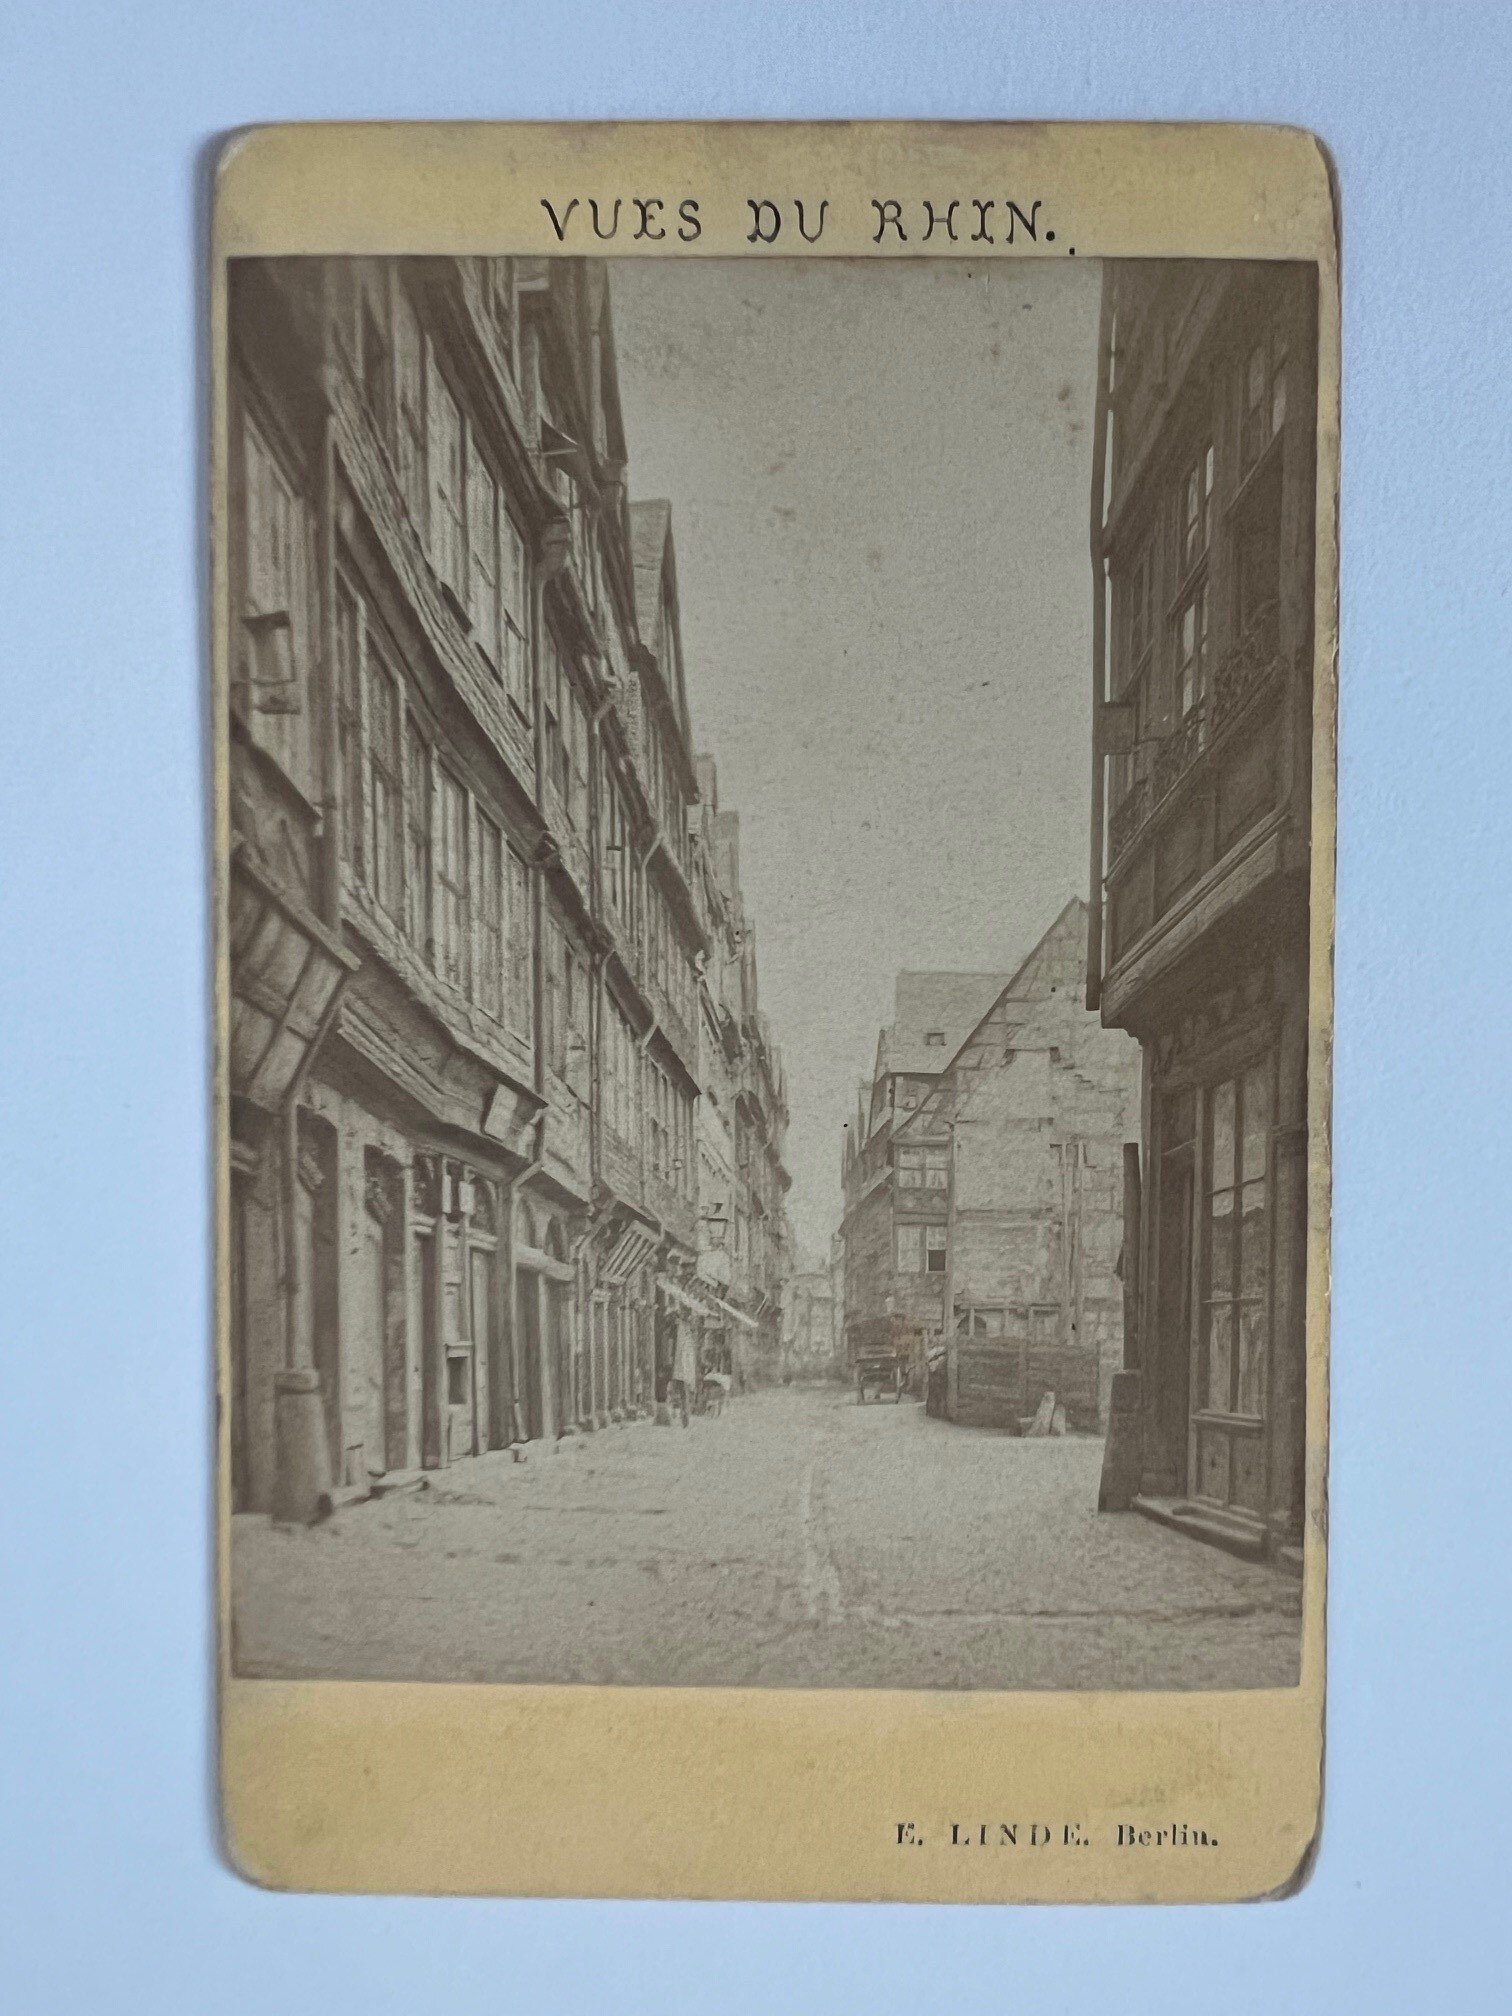 CdV, E. Linde, Frankfurt, Die Judengasse, ca. 1874. (Taunus-Rhein-Main - Regionalgeschichtliche Sammlung Dr. Stefan Naas CC BY-NC-SA)